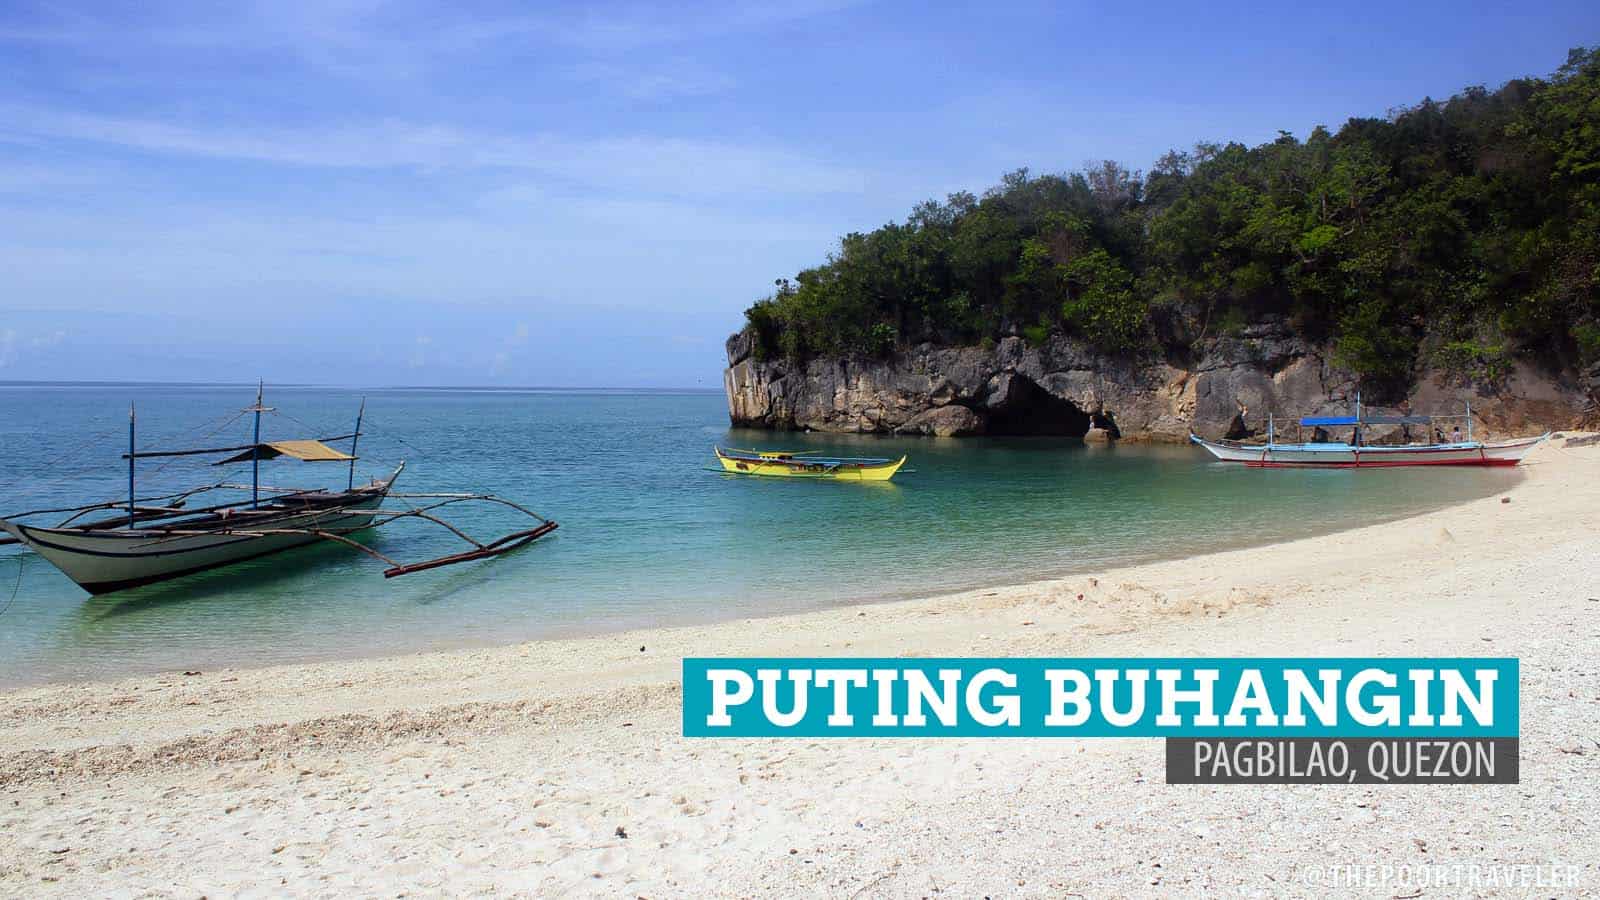 Puting Buhangin Beach and Kuwebang Lampas: Pagbilao, Quezon